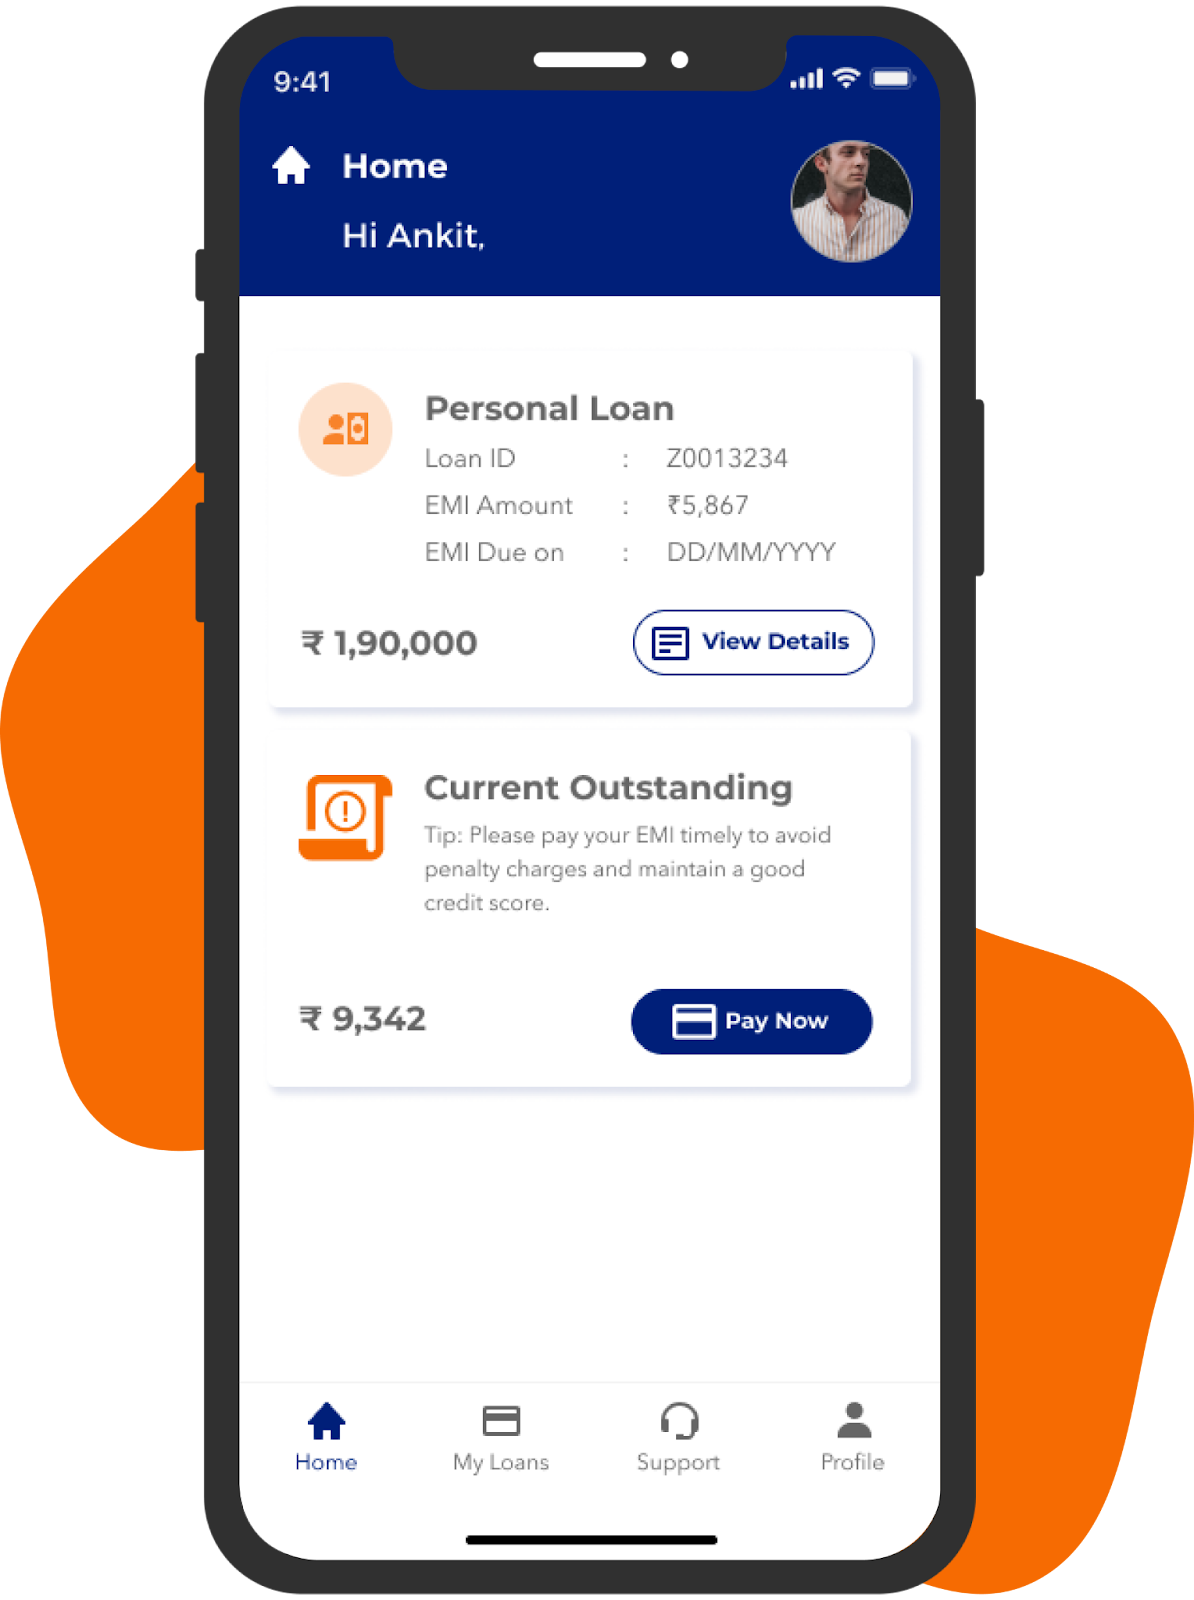 Personal Loan App User Engagement